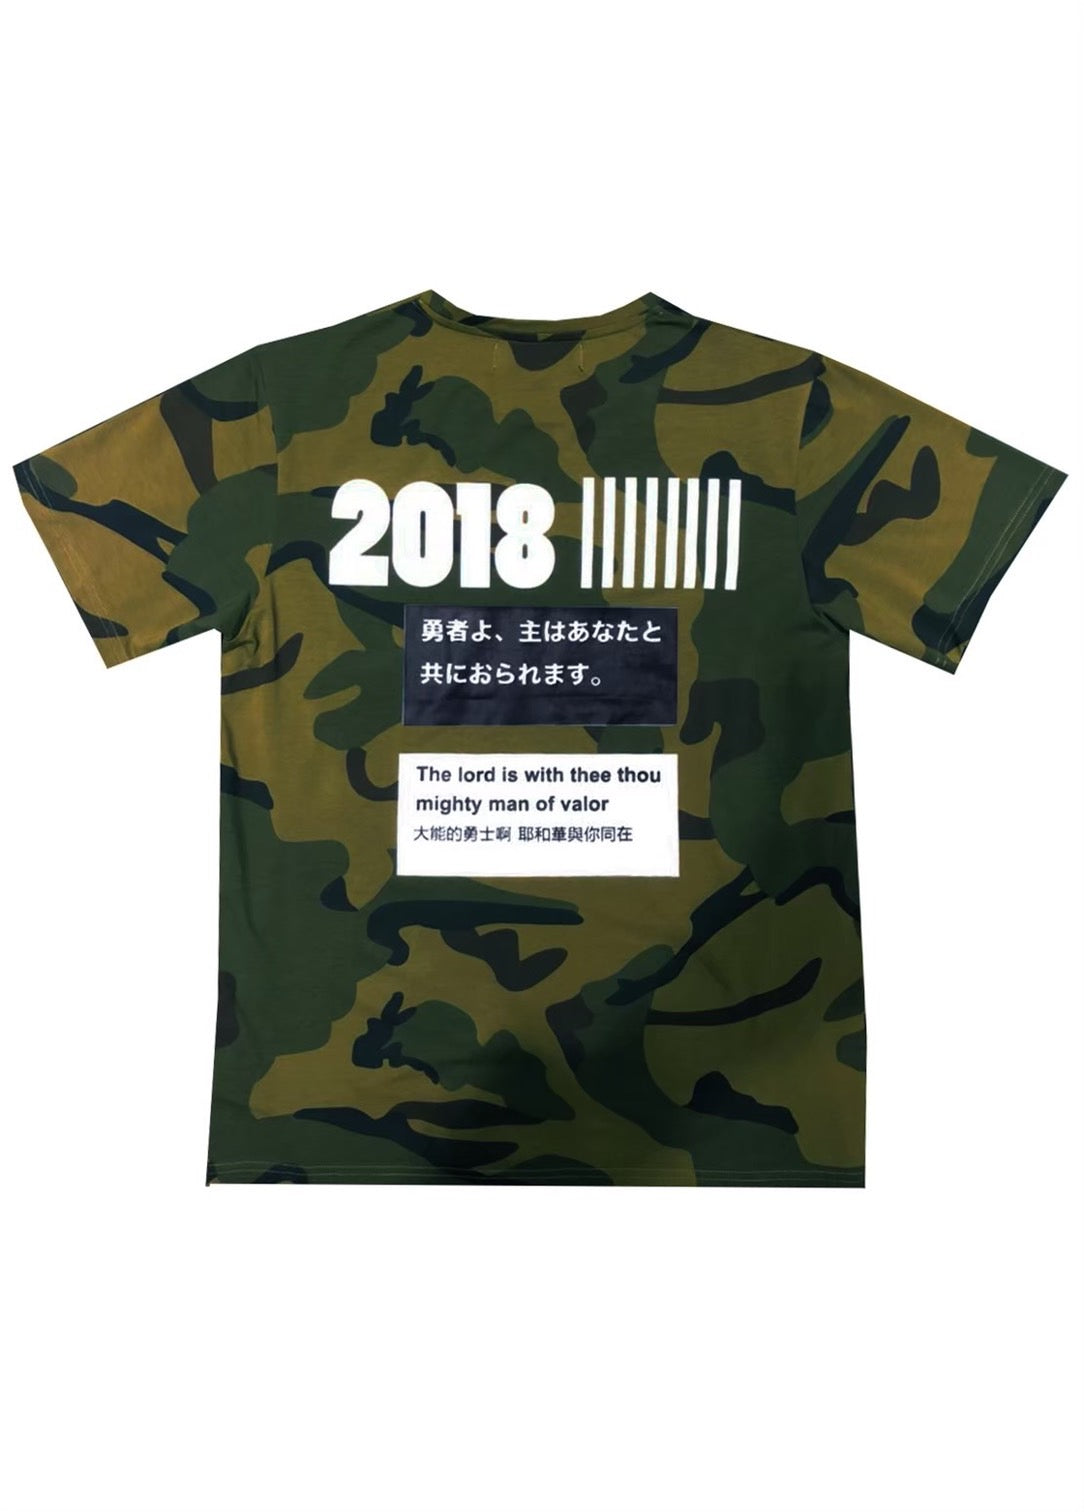 ANTI WAR 2018 TSHIRT 2018 Anti-war Commemorative T 